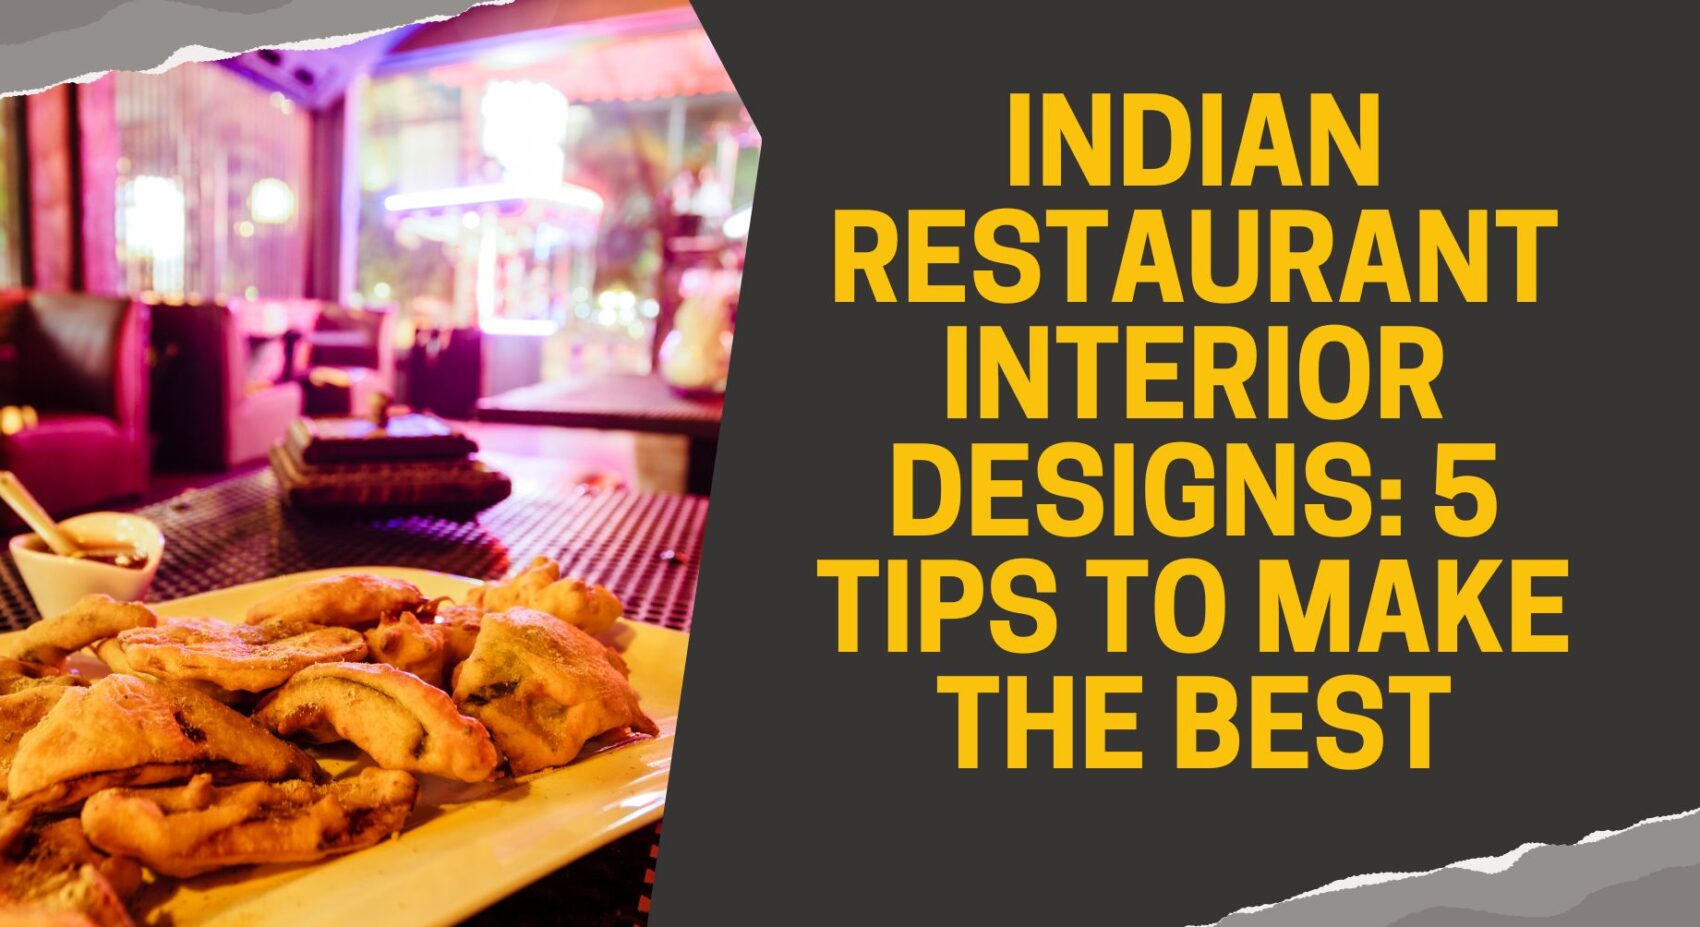 Indian Restaurant Interior Design